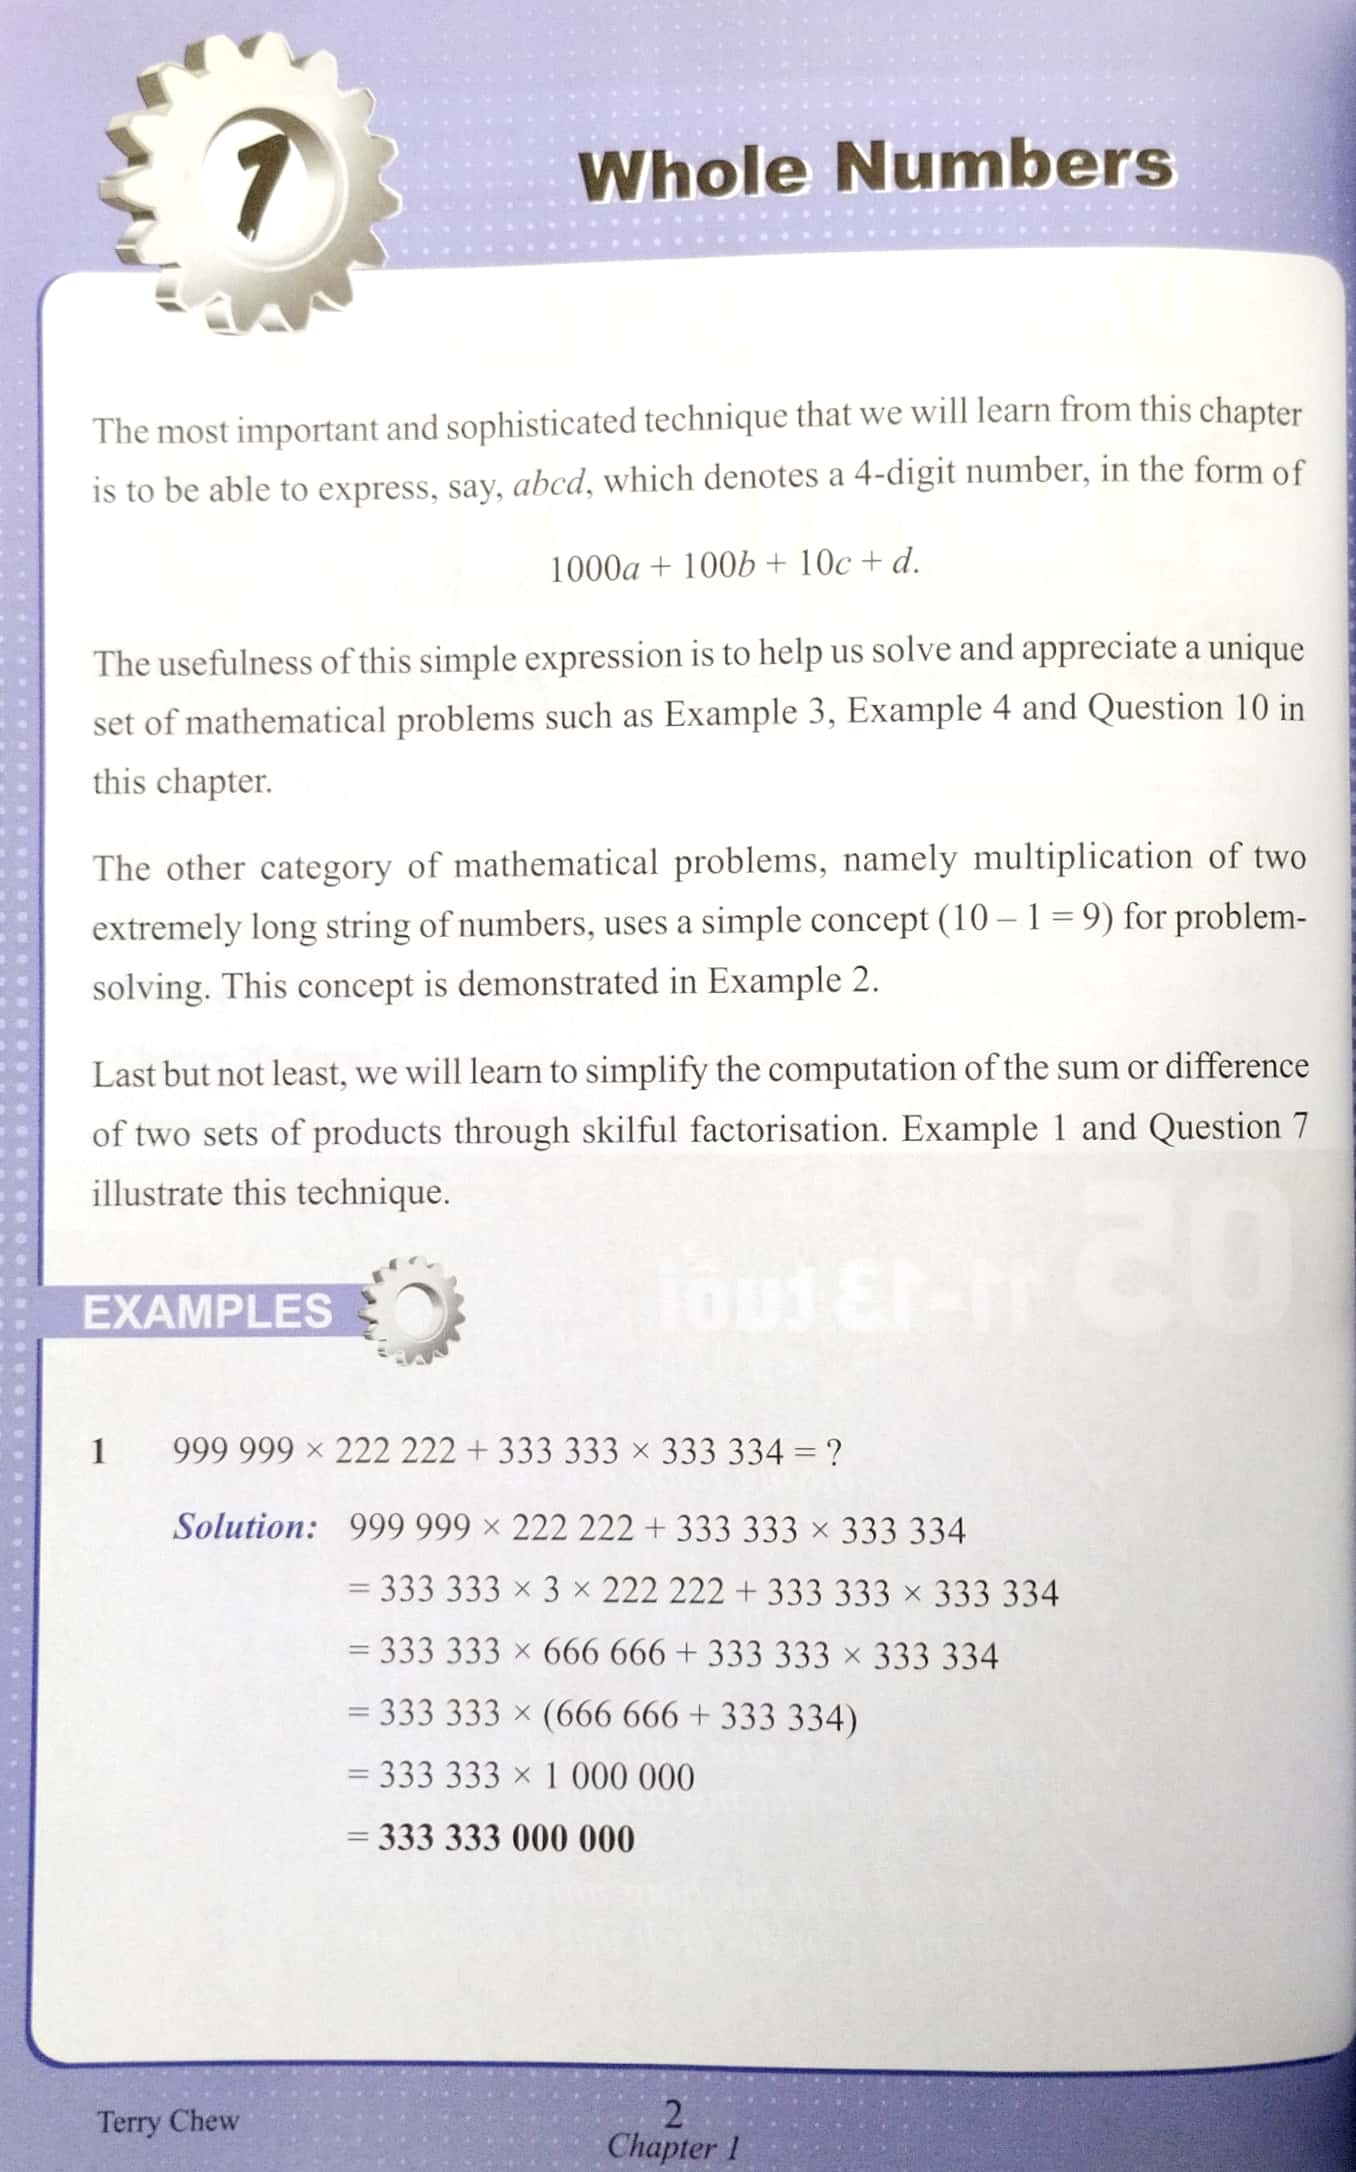 Đánh Thức Tài Năng Toán Học - Unleash The Maths Olympian In You! - Tập 5 11-13 Tuổi PDF